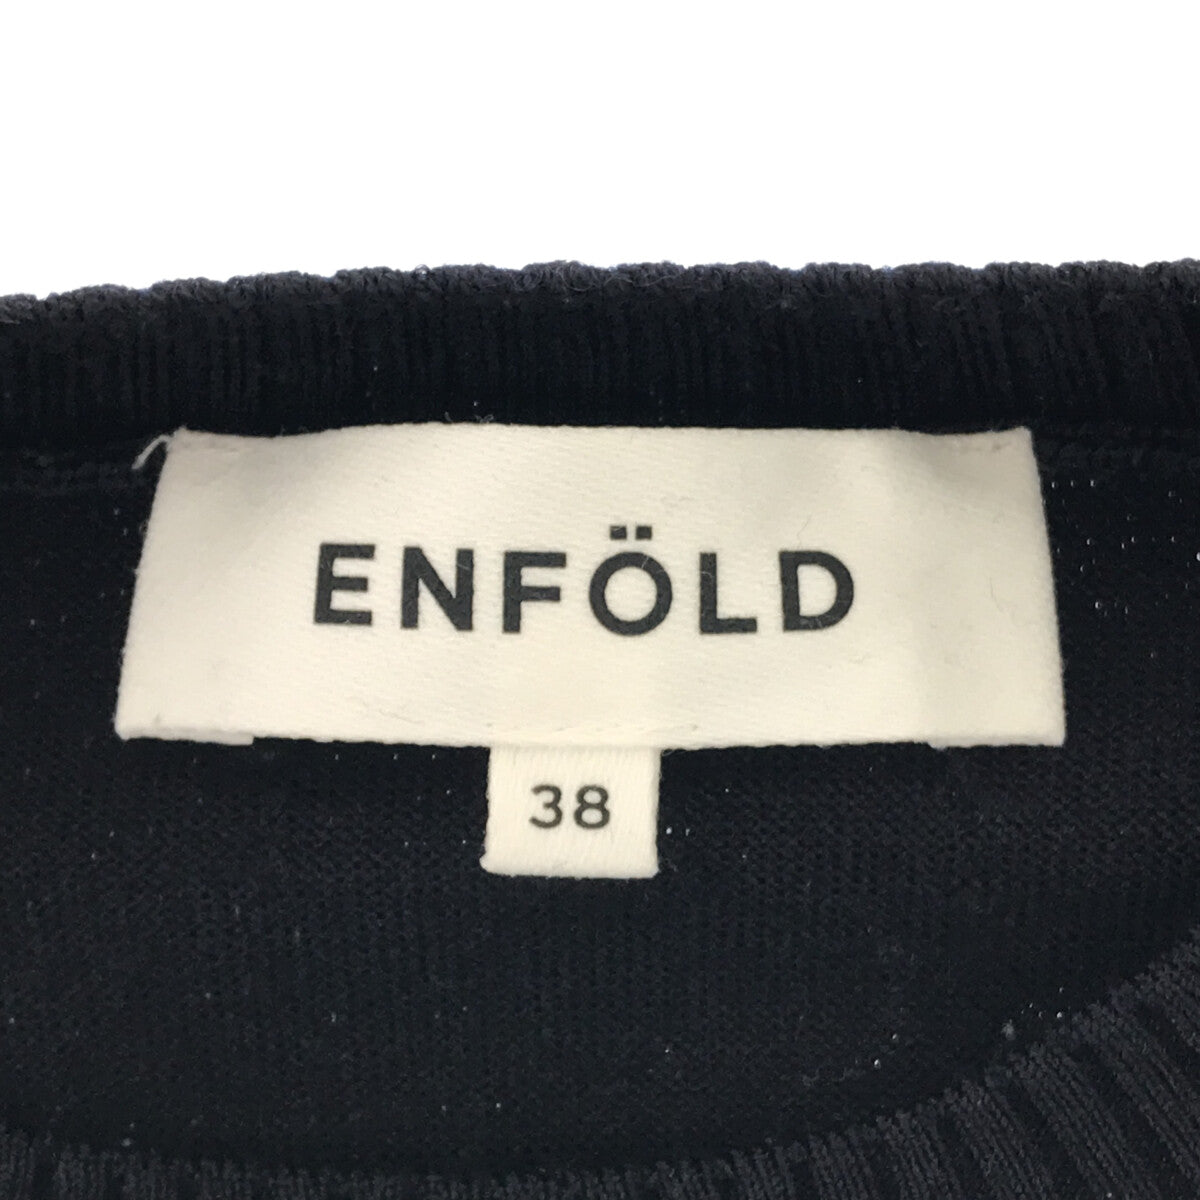 ENFOLD / エンフォルド | シャツドッキング レイヤード ニット | 38 |